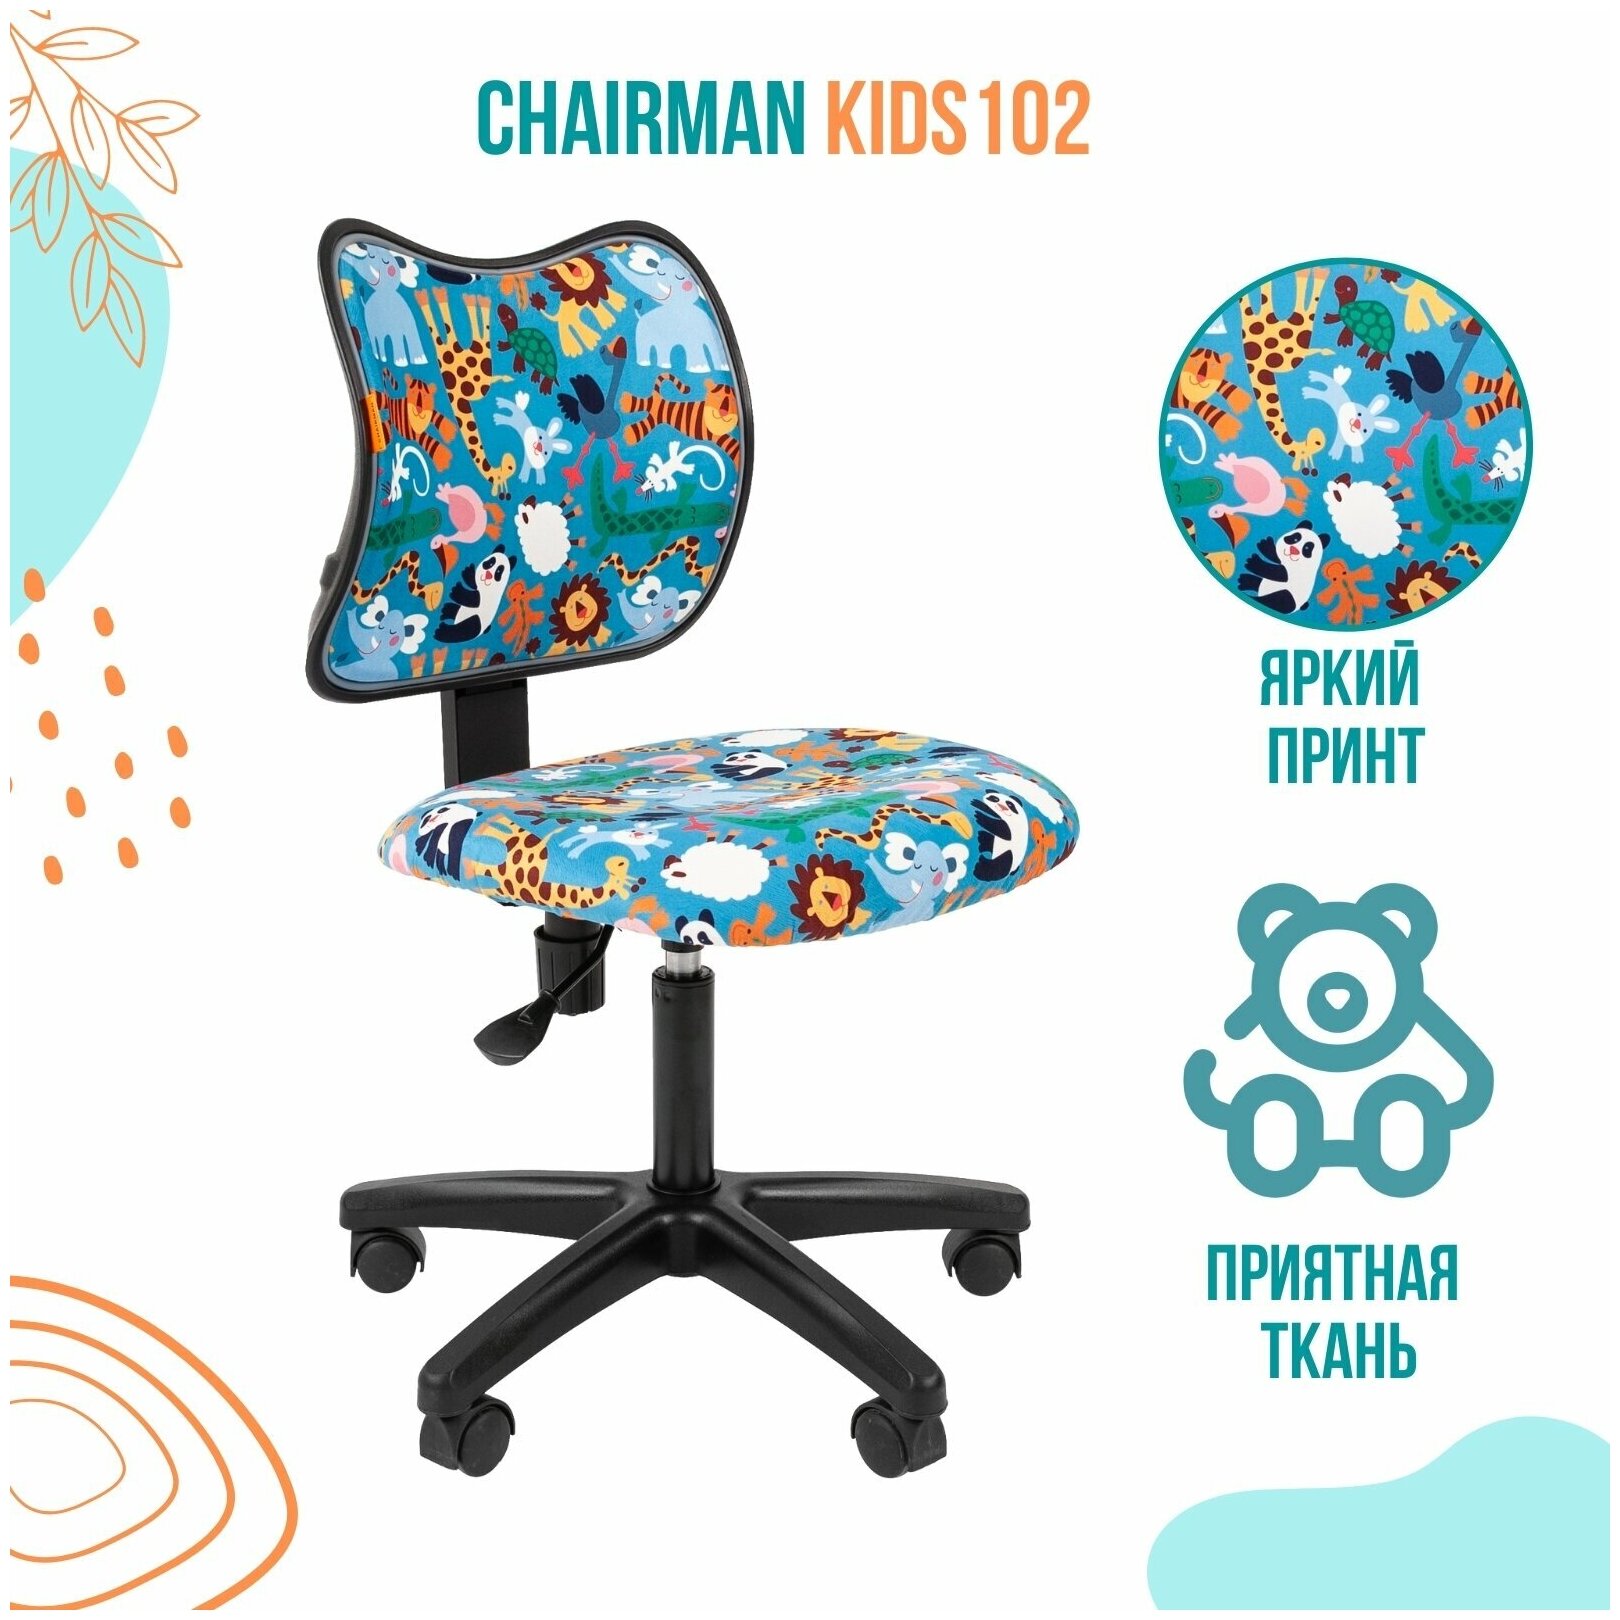 Детское компьютерное кресло Chairman Kids 102 black, обивка: текстиль